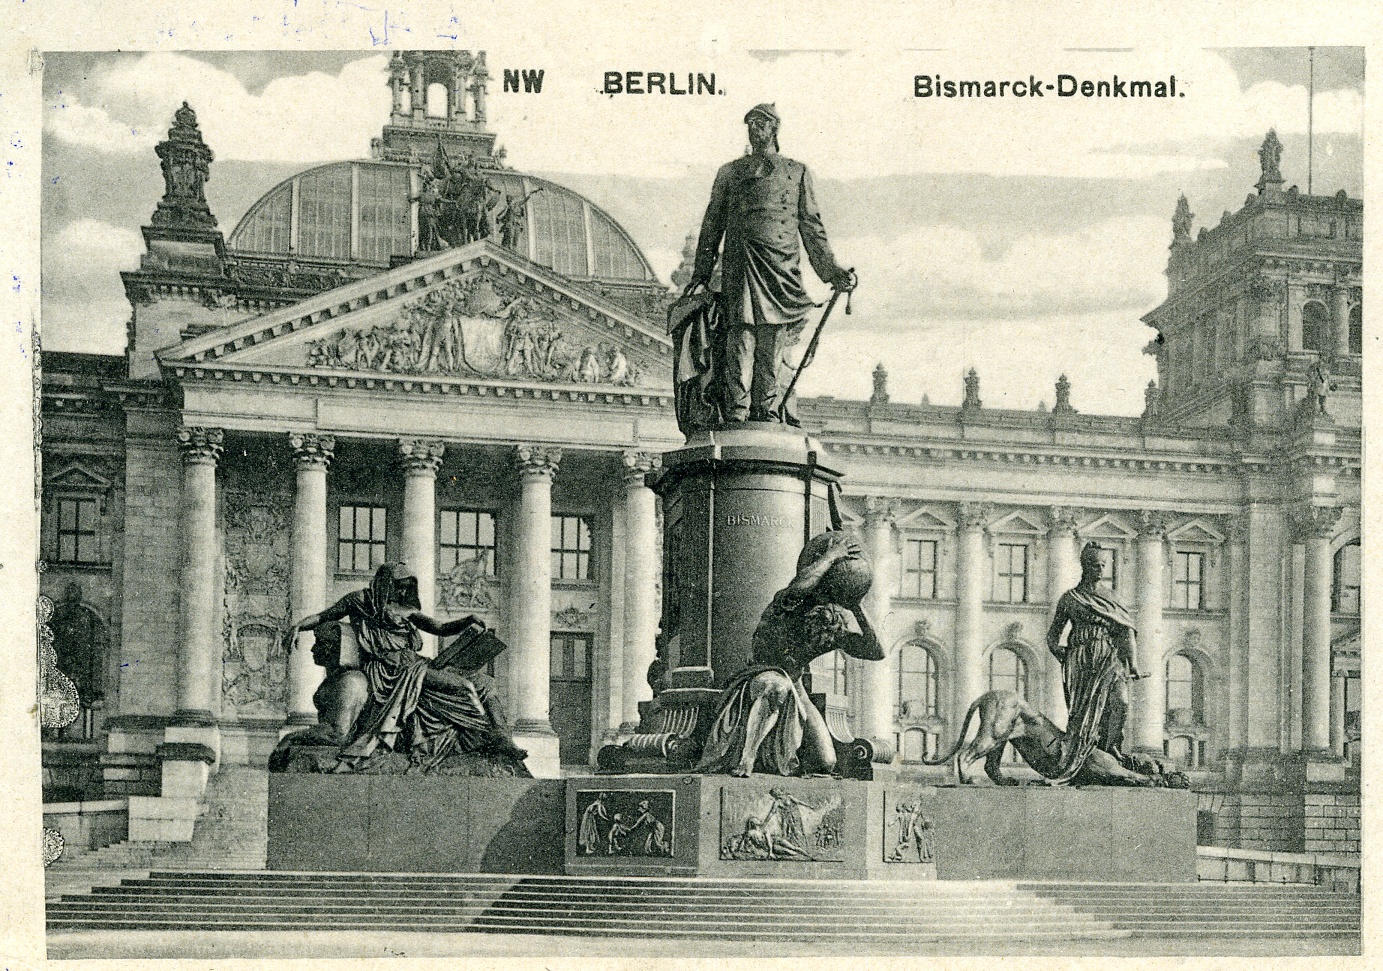 Postkarte "Bismarck-Denkmal, Berlin" (Historisches Museum der Pfalz, Speyer CC BY)